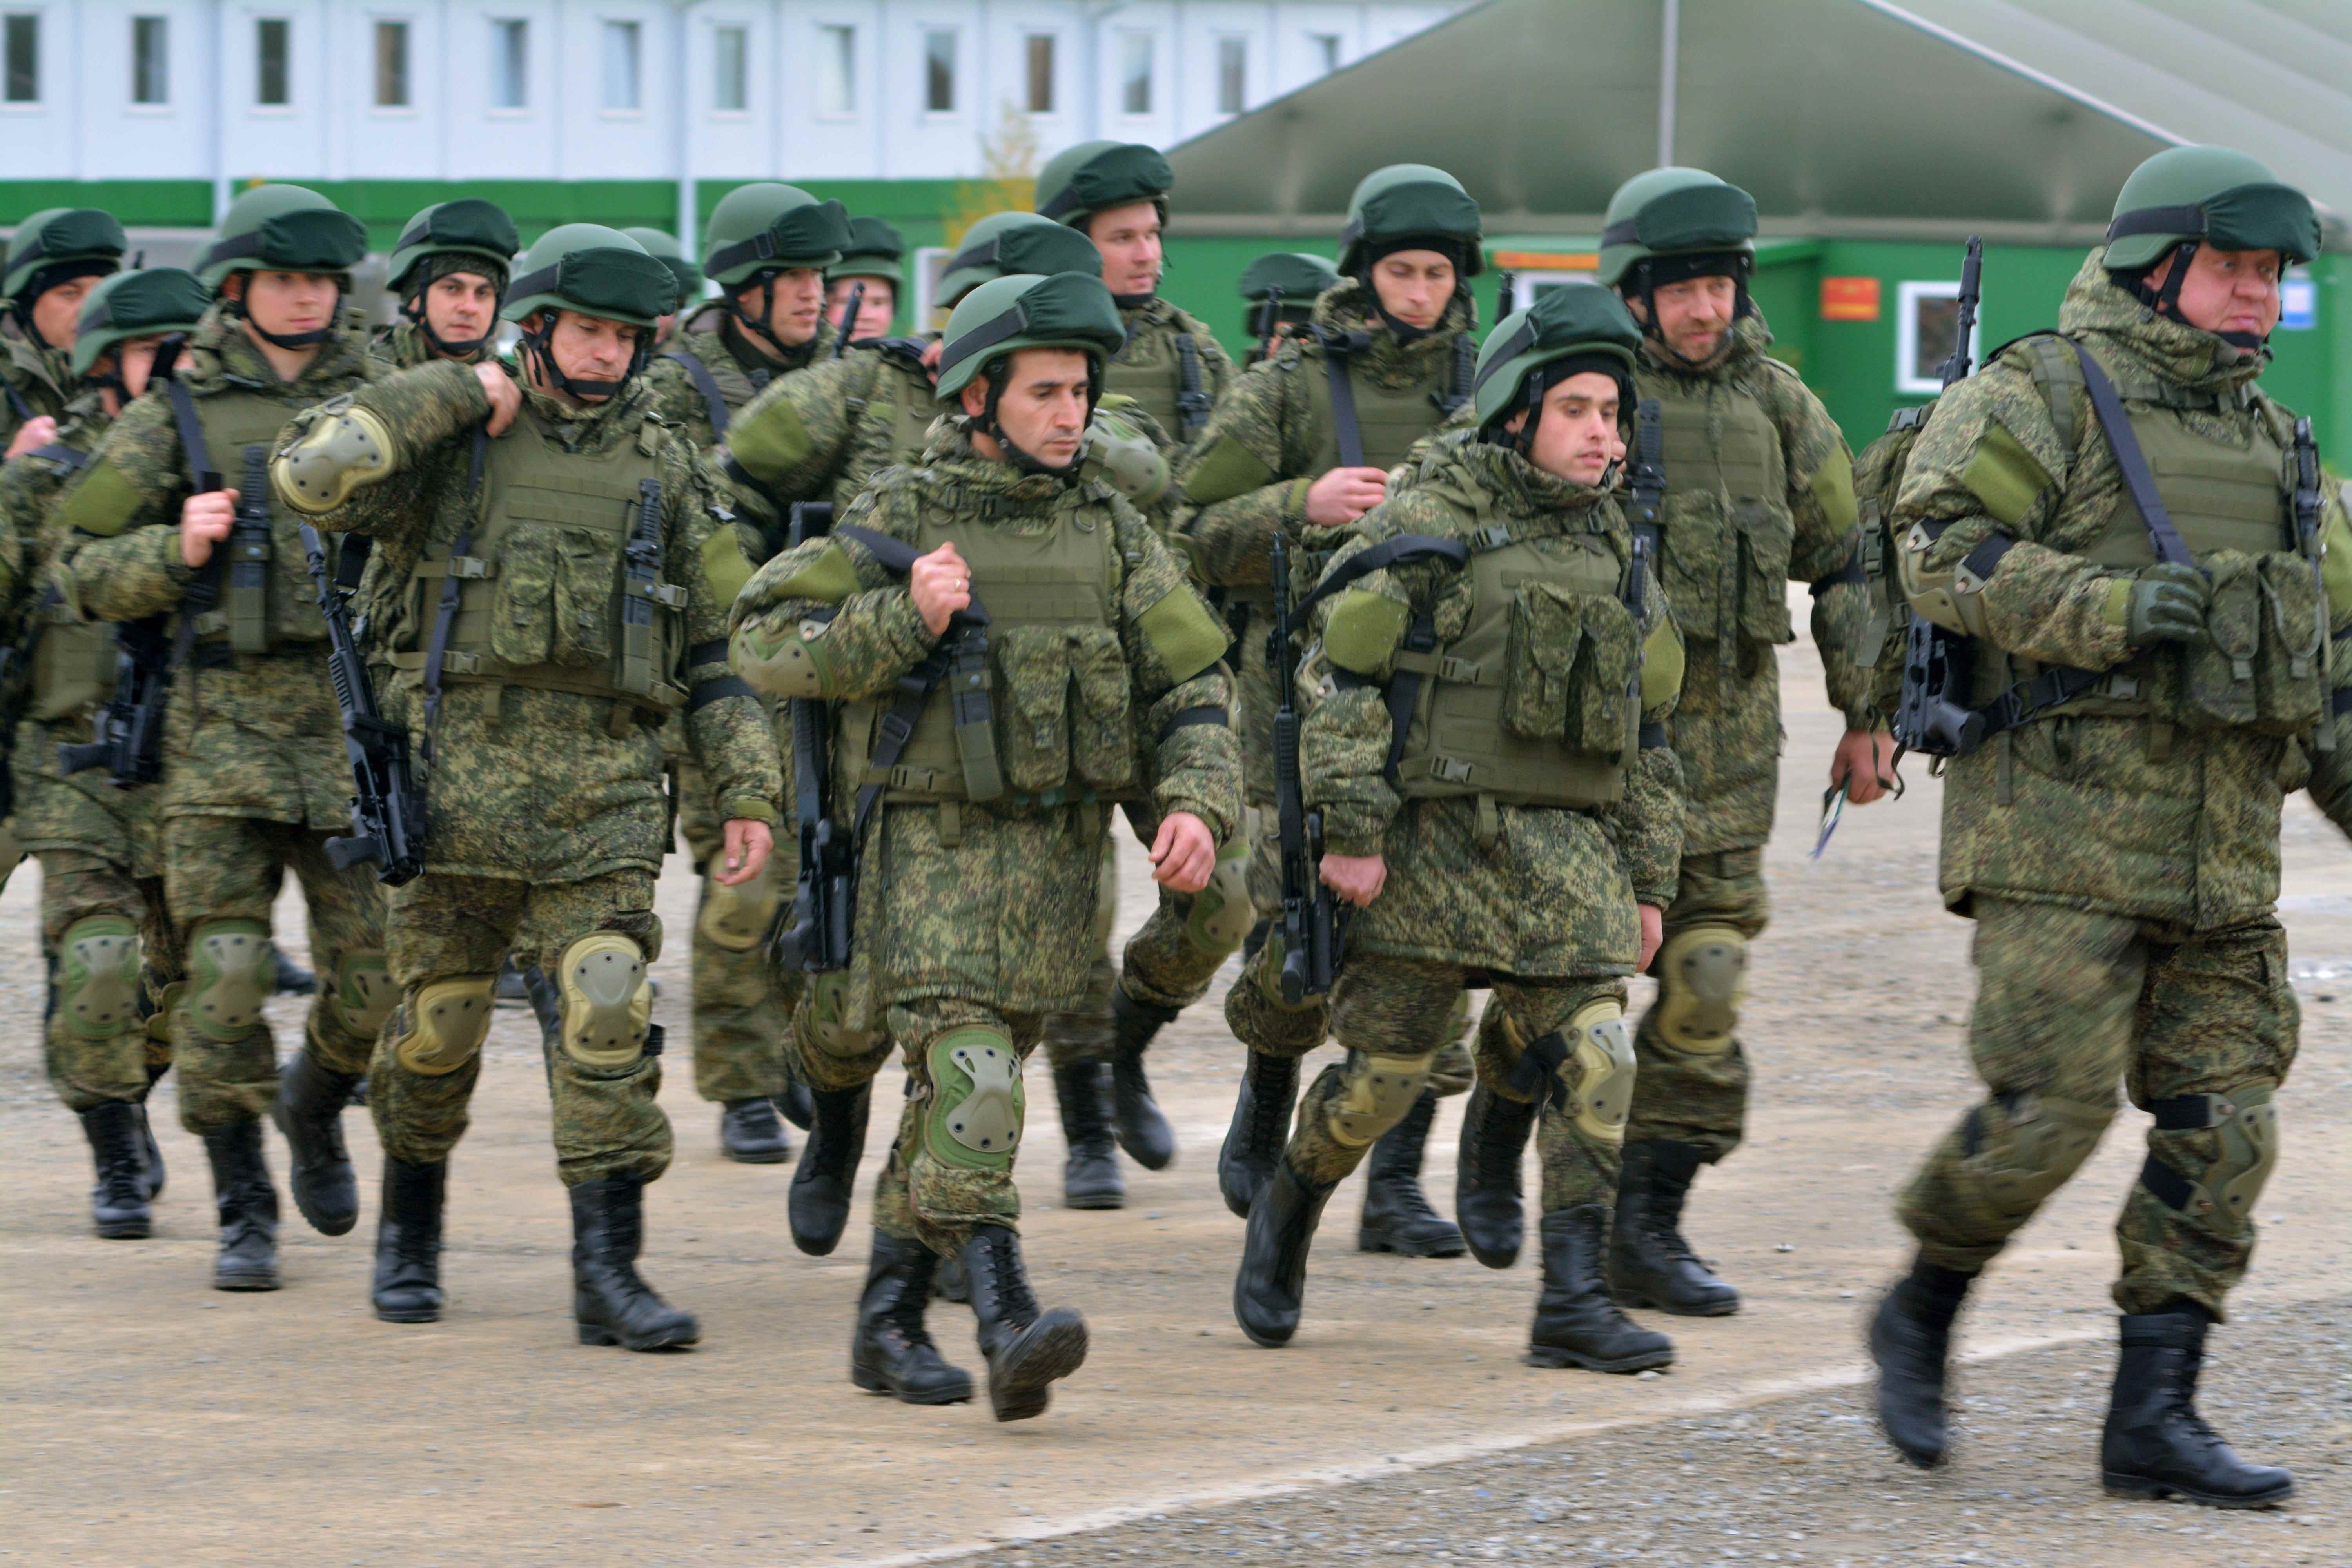 Wehrpflichtige Bürger werden als Teil der Mobilisierung angesehen, da die militärische Ausbildung im Rahmen der Mobilisierung in Rostow, Russland, am 31. Oktober 2022 fortgesetzt wird.